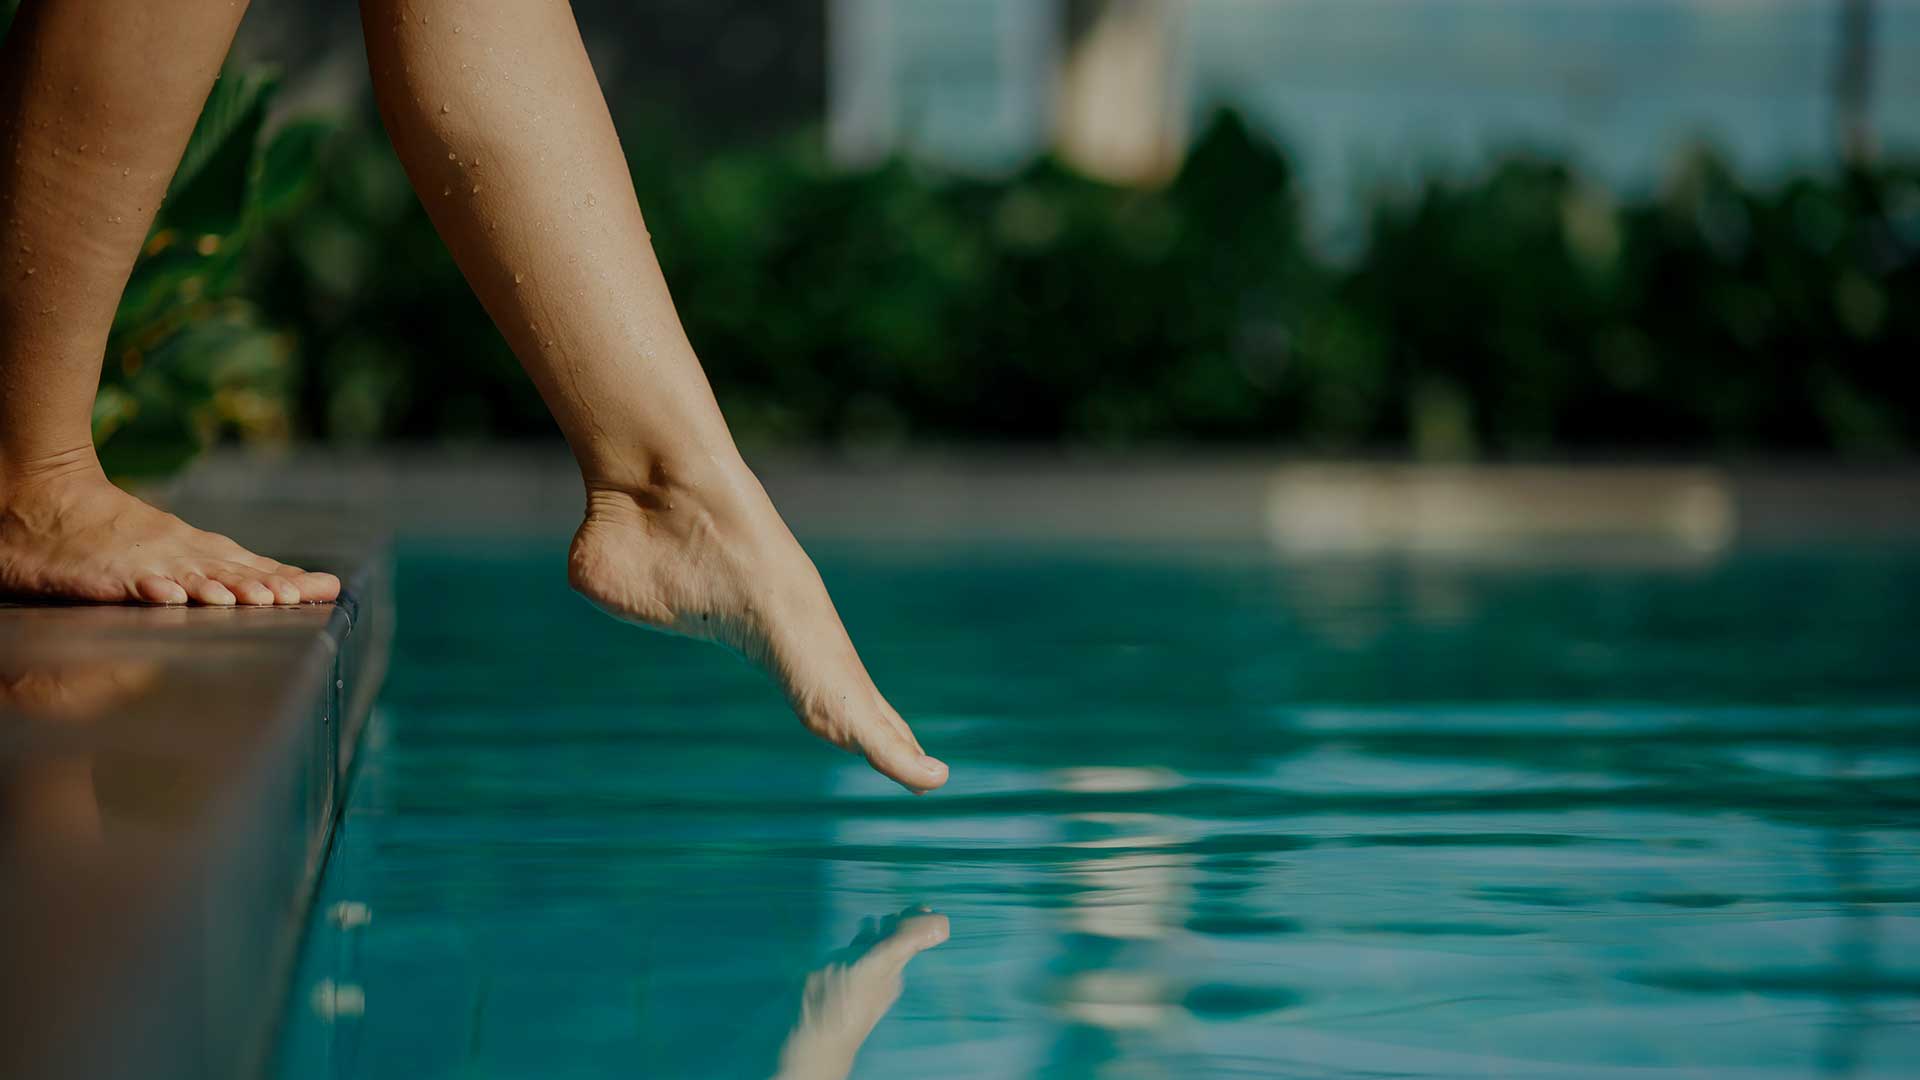 Pie d'une femme touchant la surface de l'eau limpide d'un bassin.